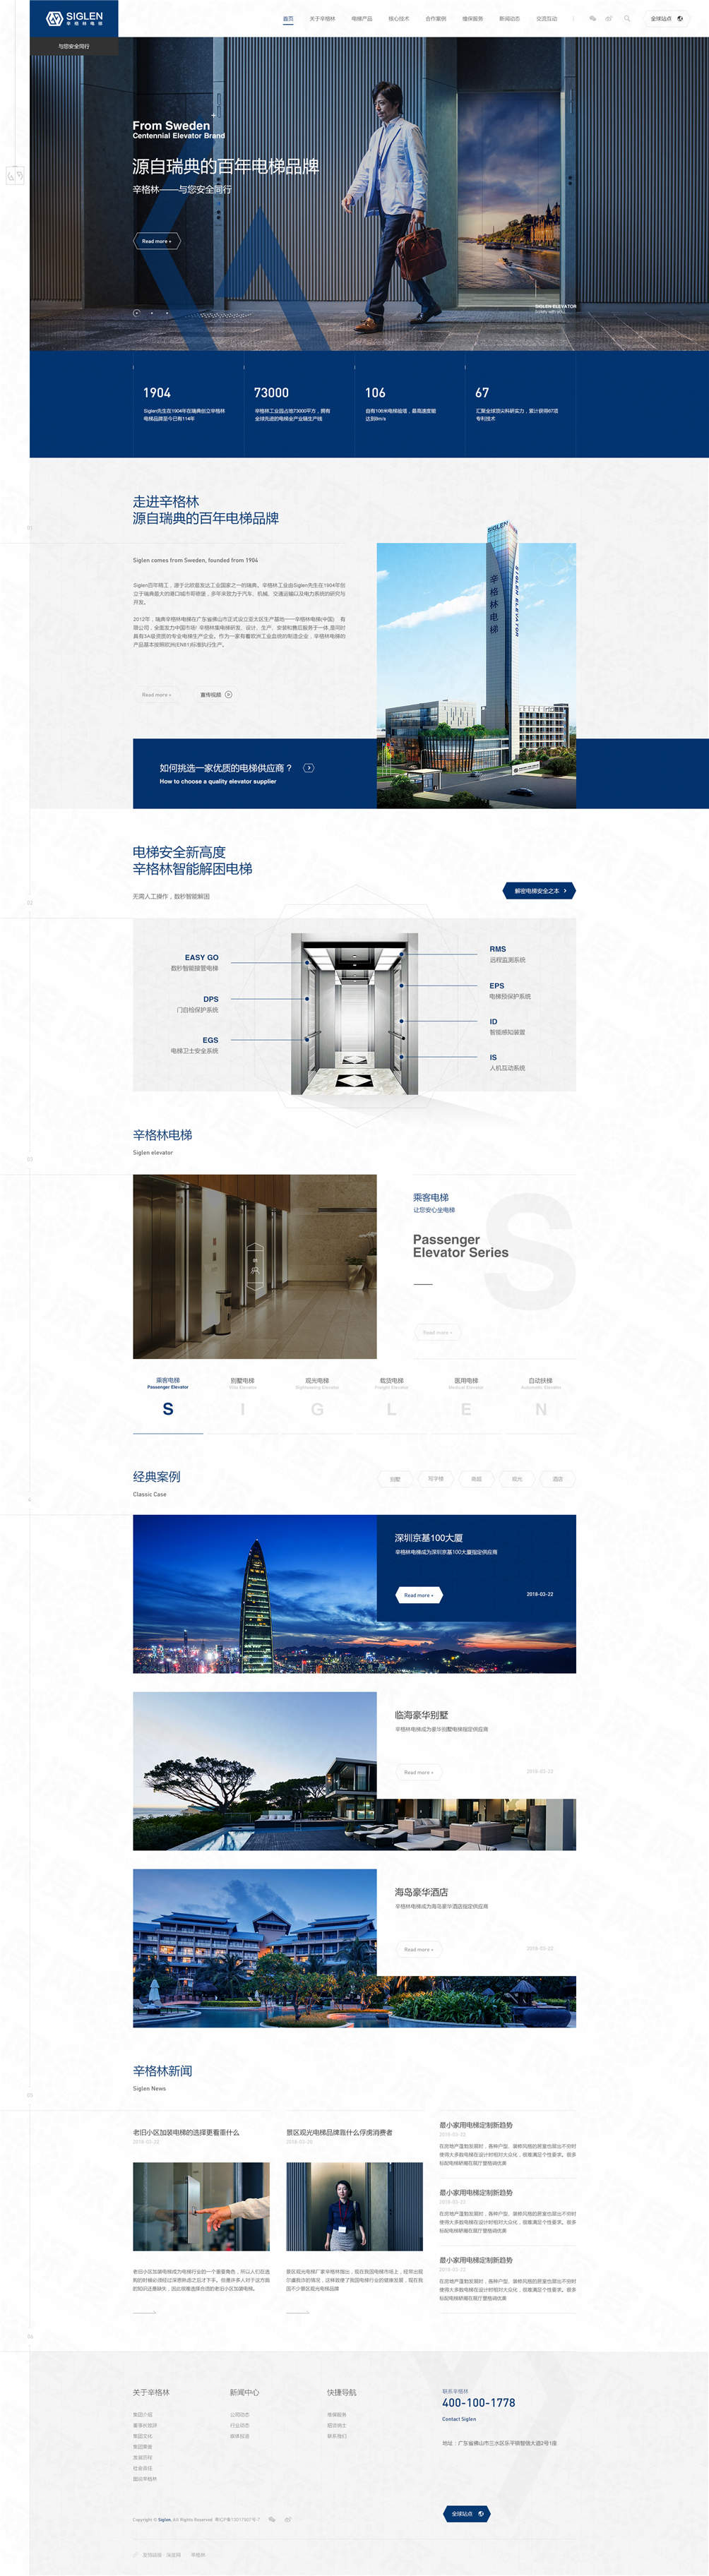 佛山辛格林电梯品牌网站建设案例